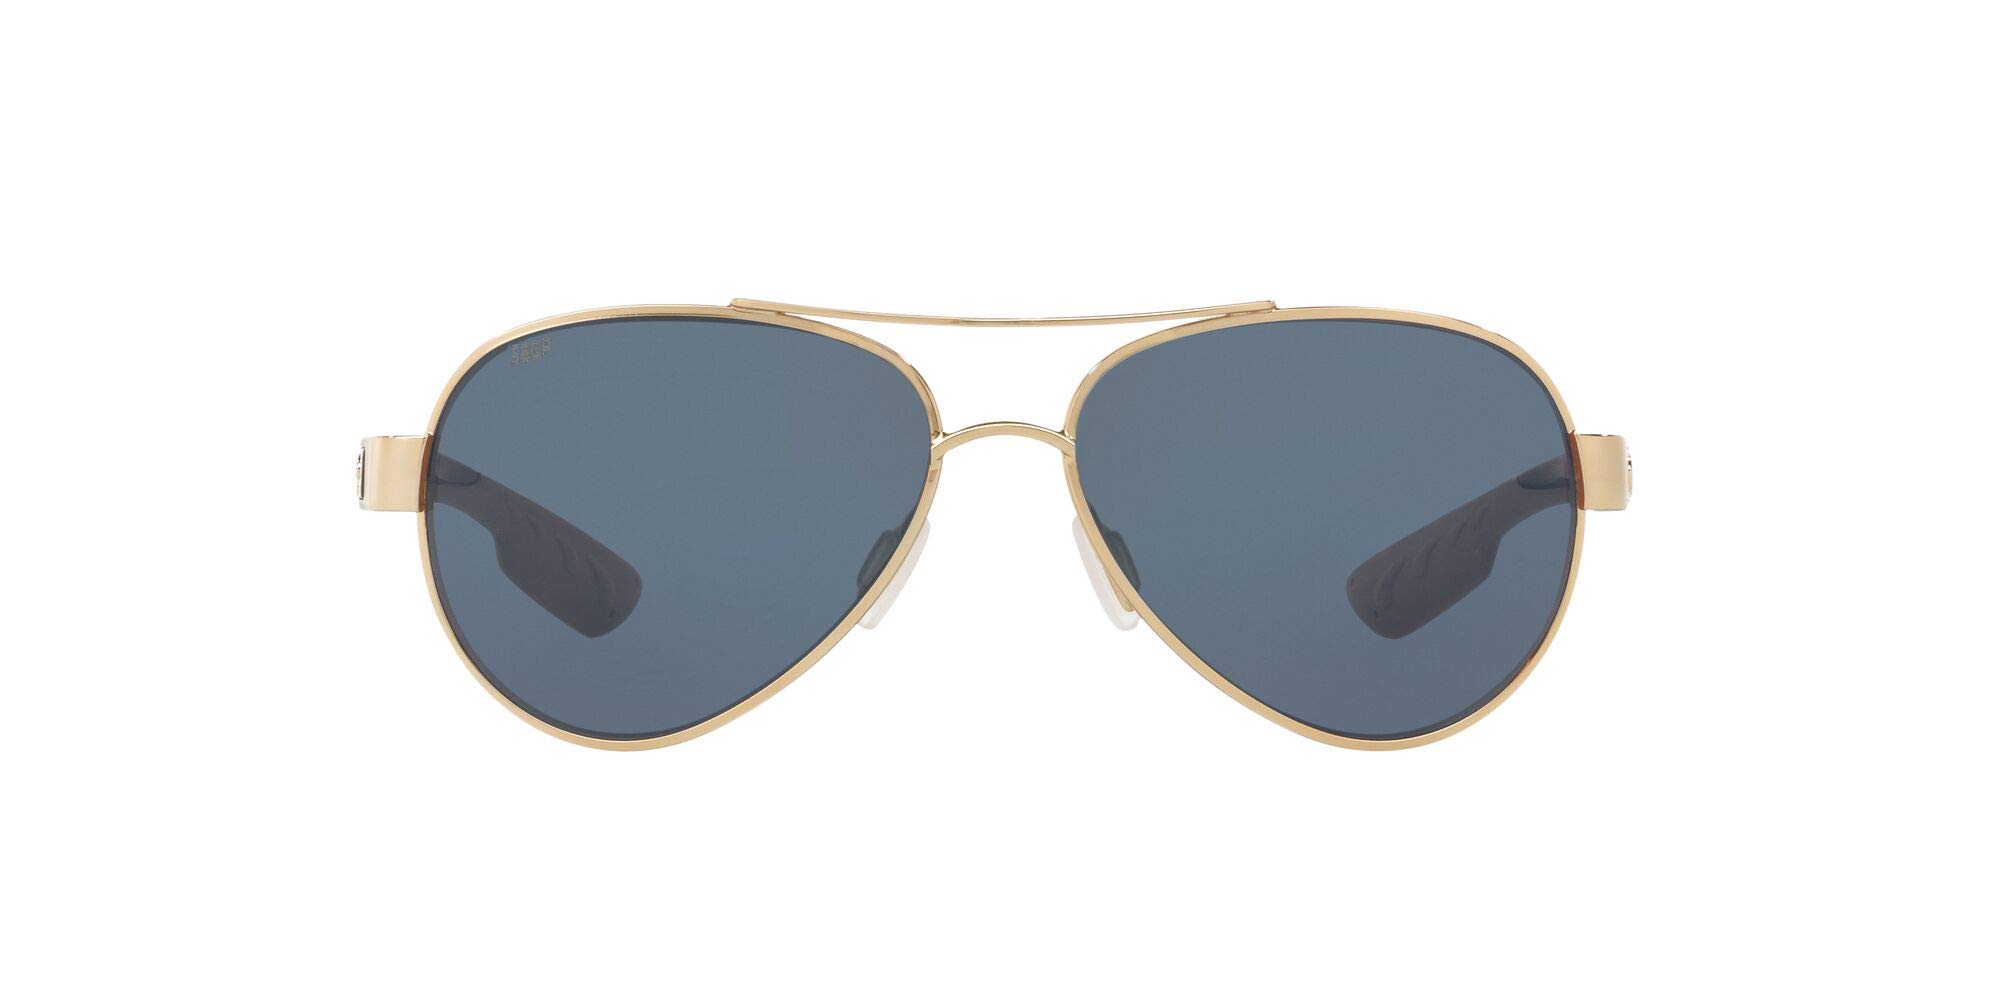 Costa Del Mar Womens Loreto Polarized Aviator Sunglasses - Rose Gold/Gray - 56 mm